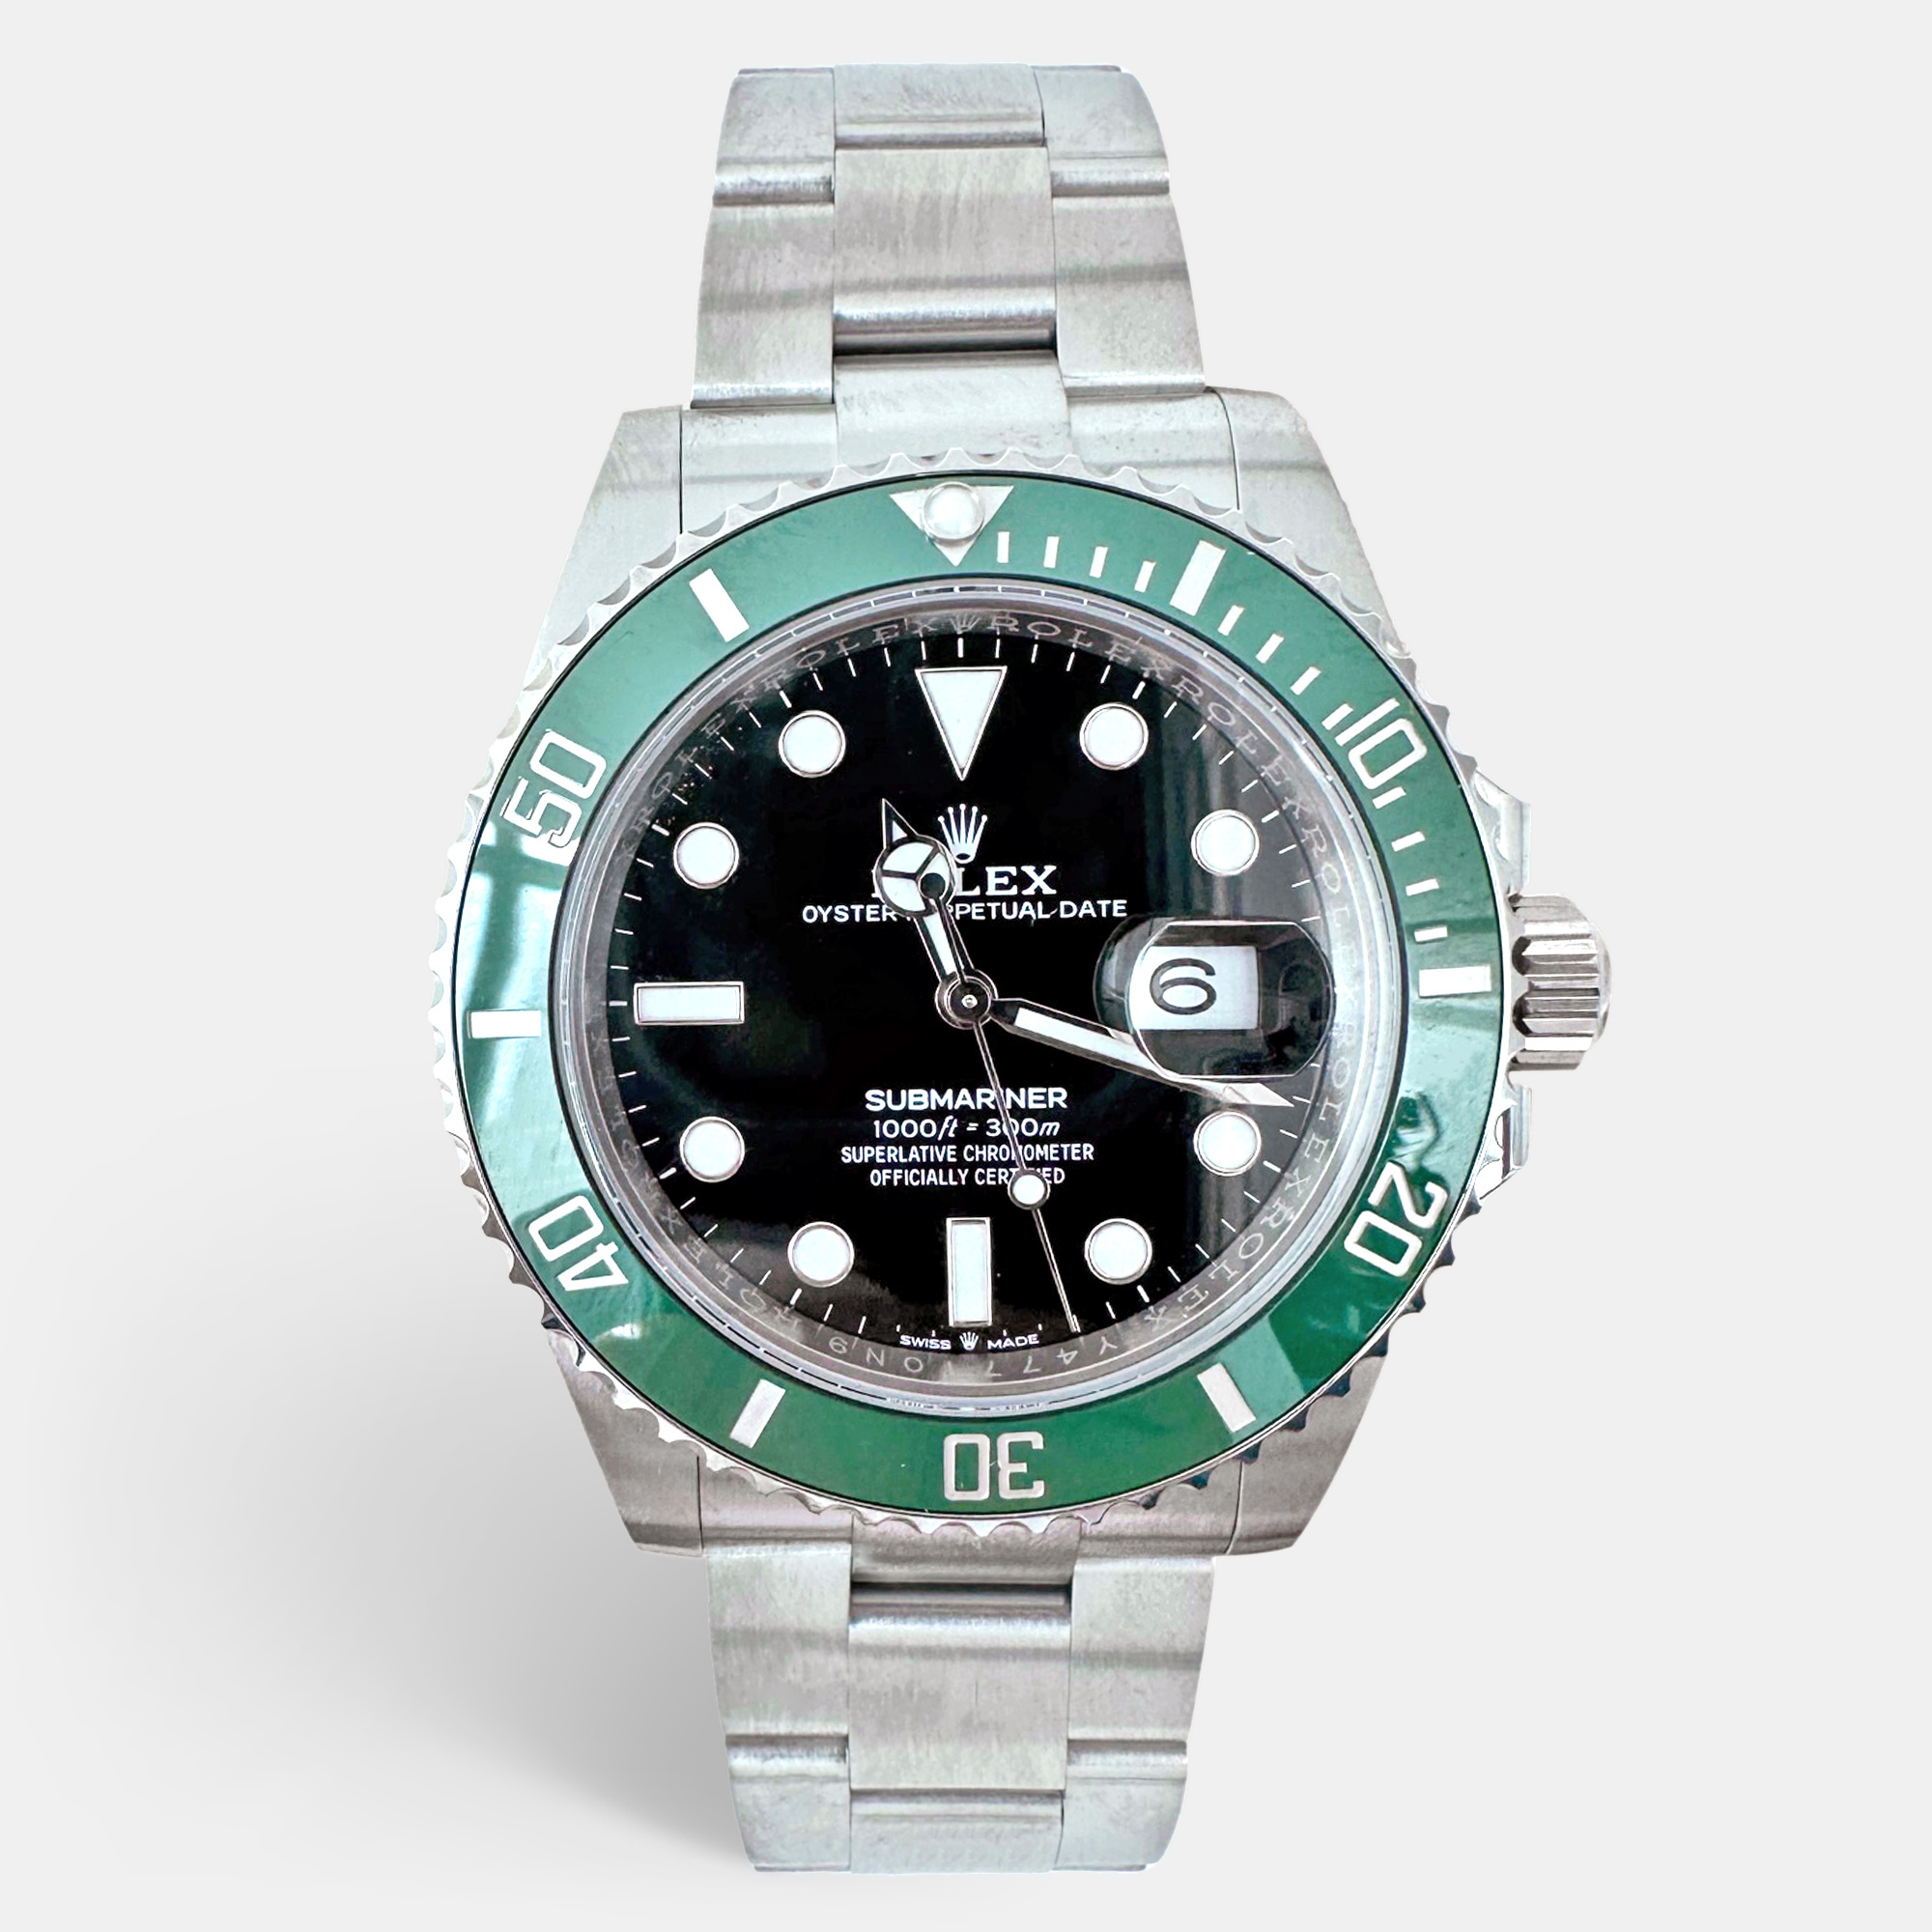 

Rolex Black Stainless Steel Submariner Date 126610LV Men's Wristwatch